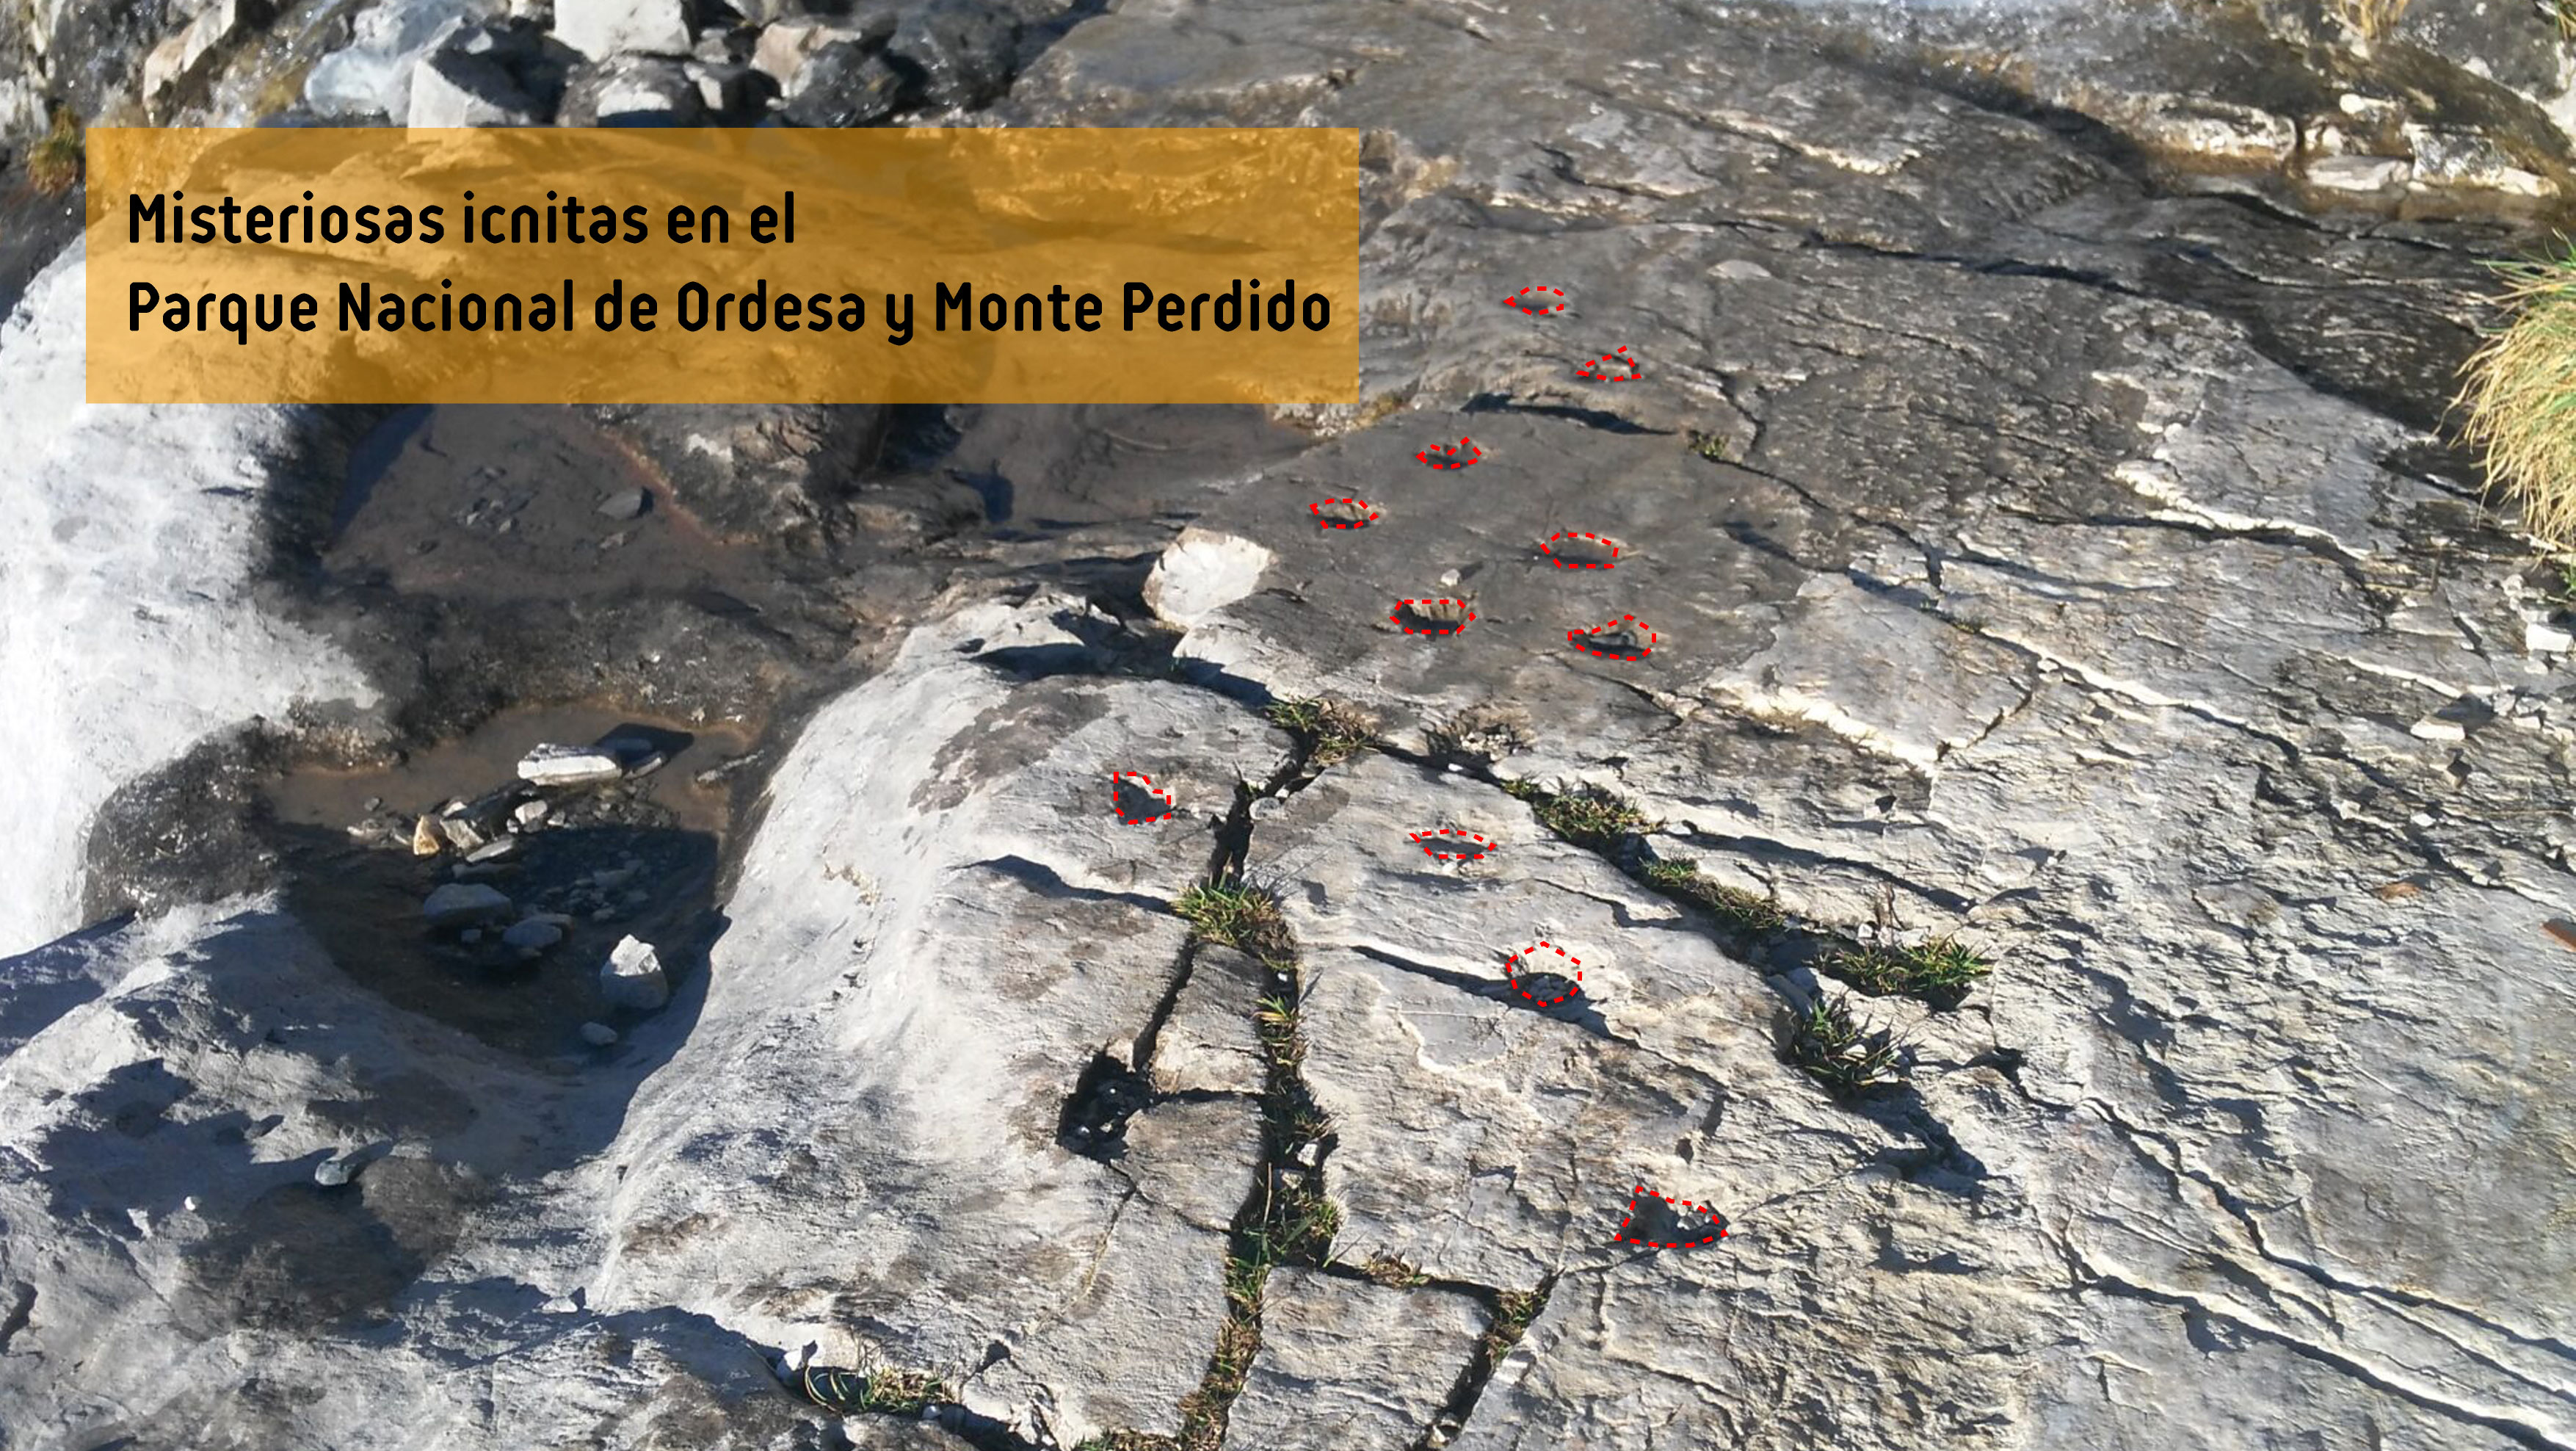 Misteriosas icnitas en el Parque Nacional de Ordesa y Monte Perdido